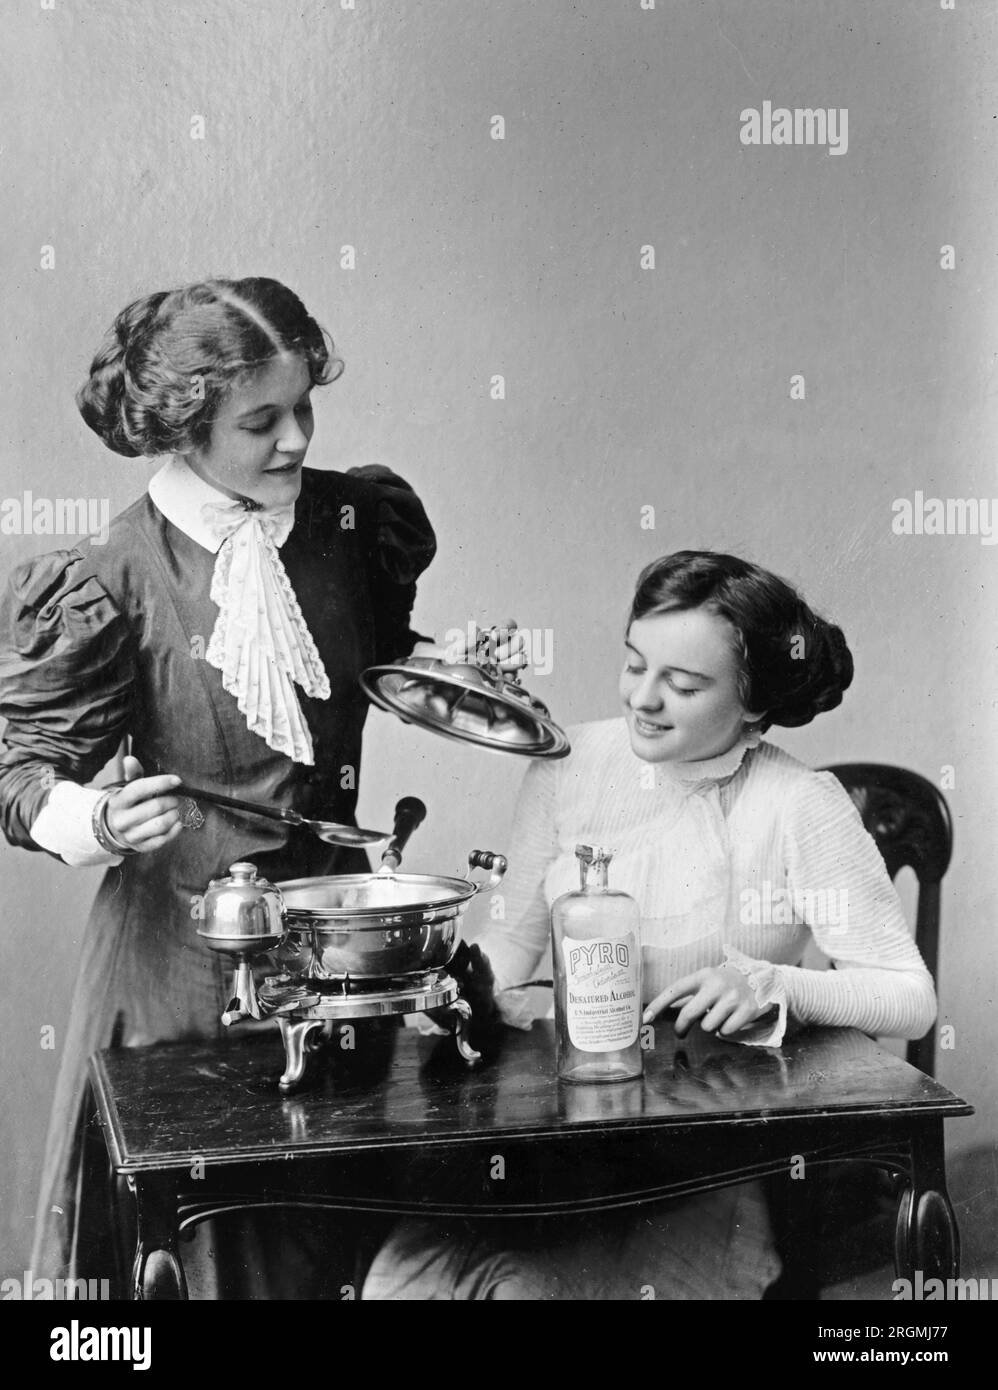 https://c8.alamy.com/compes/2rgmj77/dos-mujeres-usando-utensilios-de-cocina-en-una-demostracion-ca-1912-1930-2rgmj77.jpg